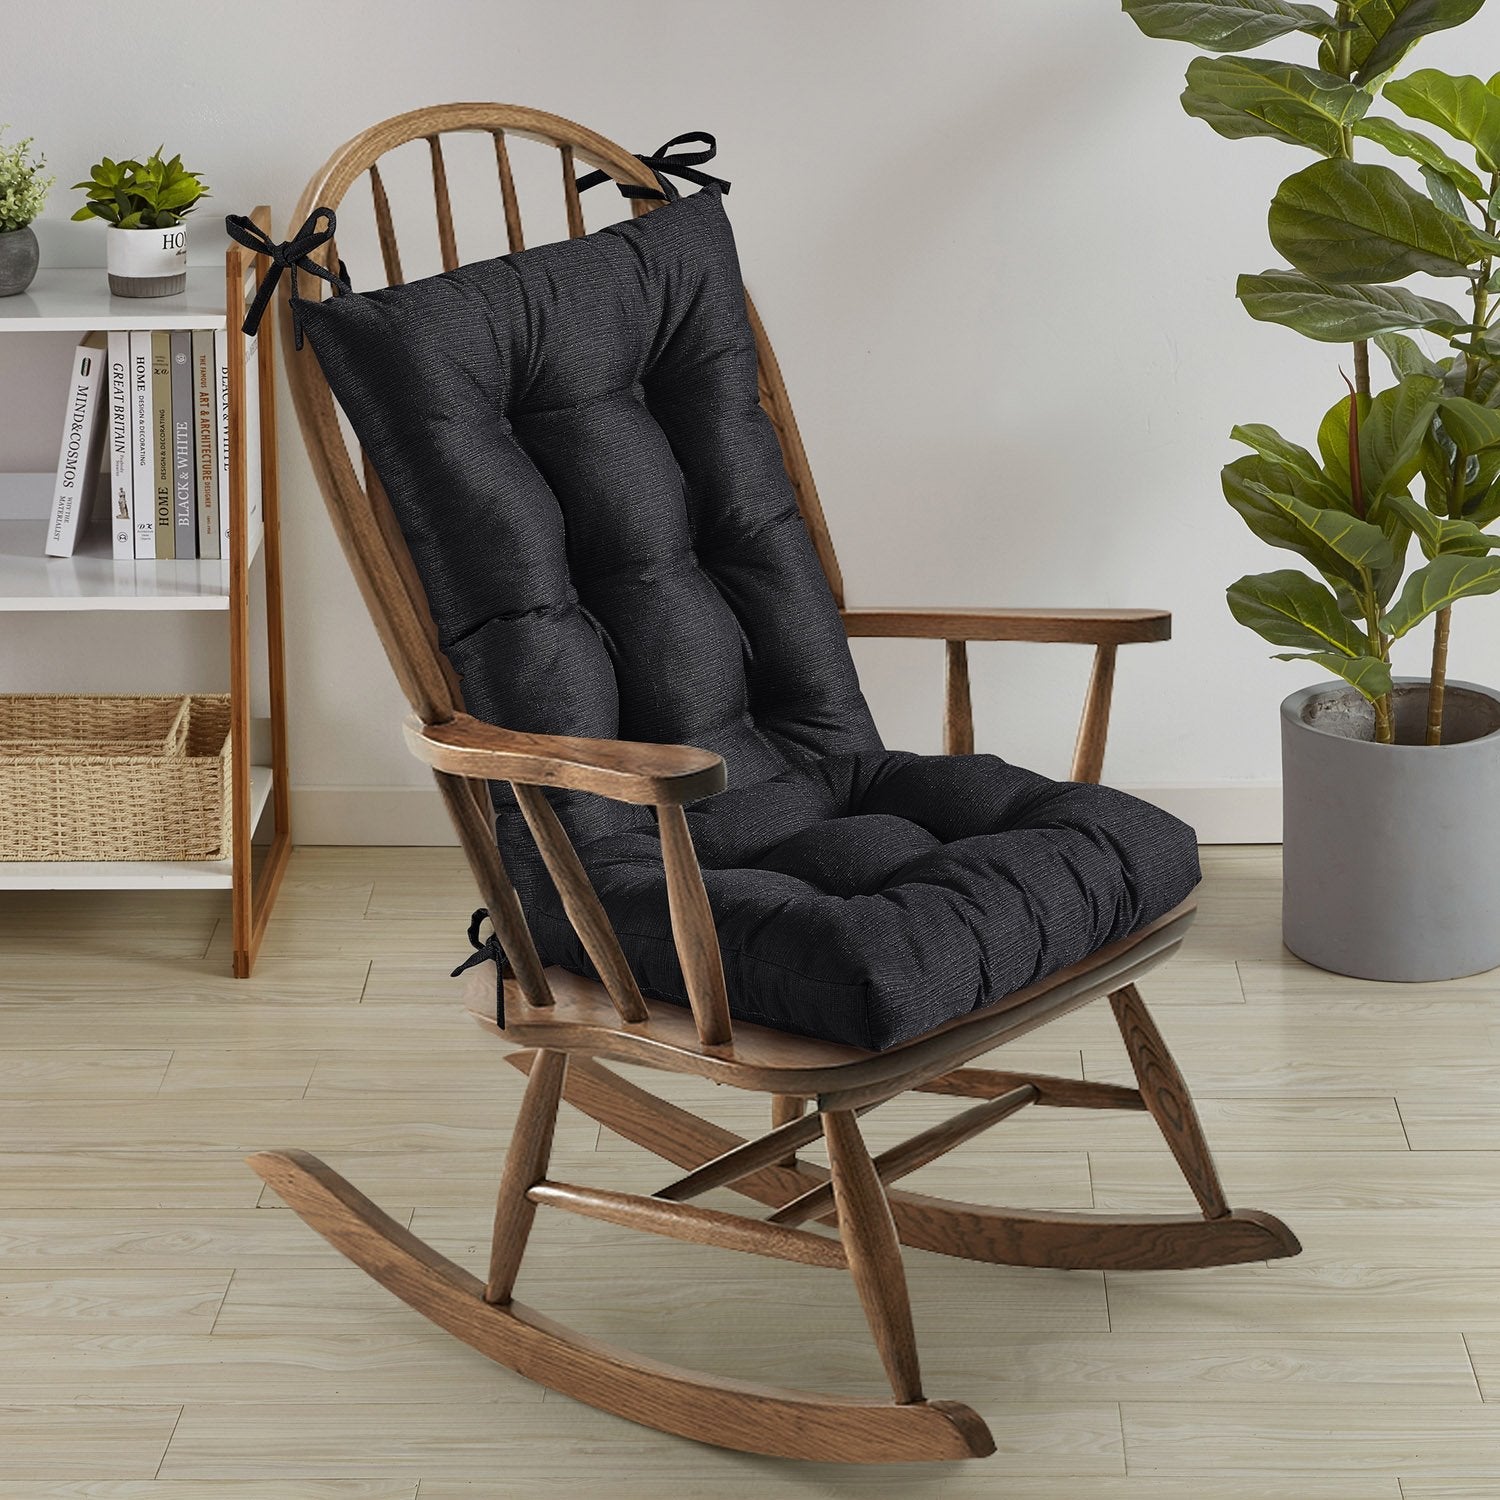 Tufted 2-Piece Rocking Chair Cushion Set Black - Chair